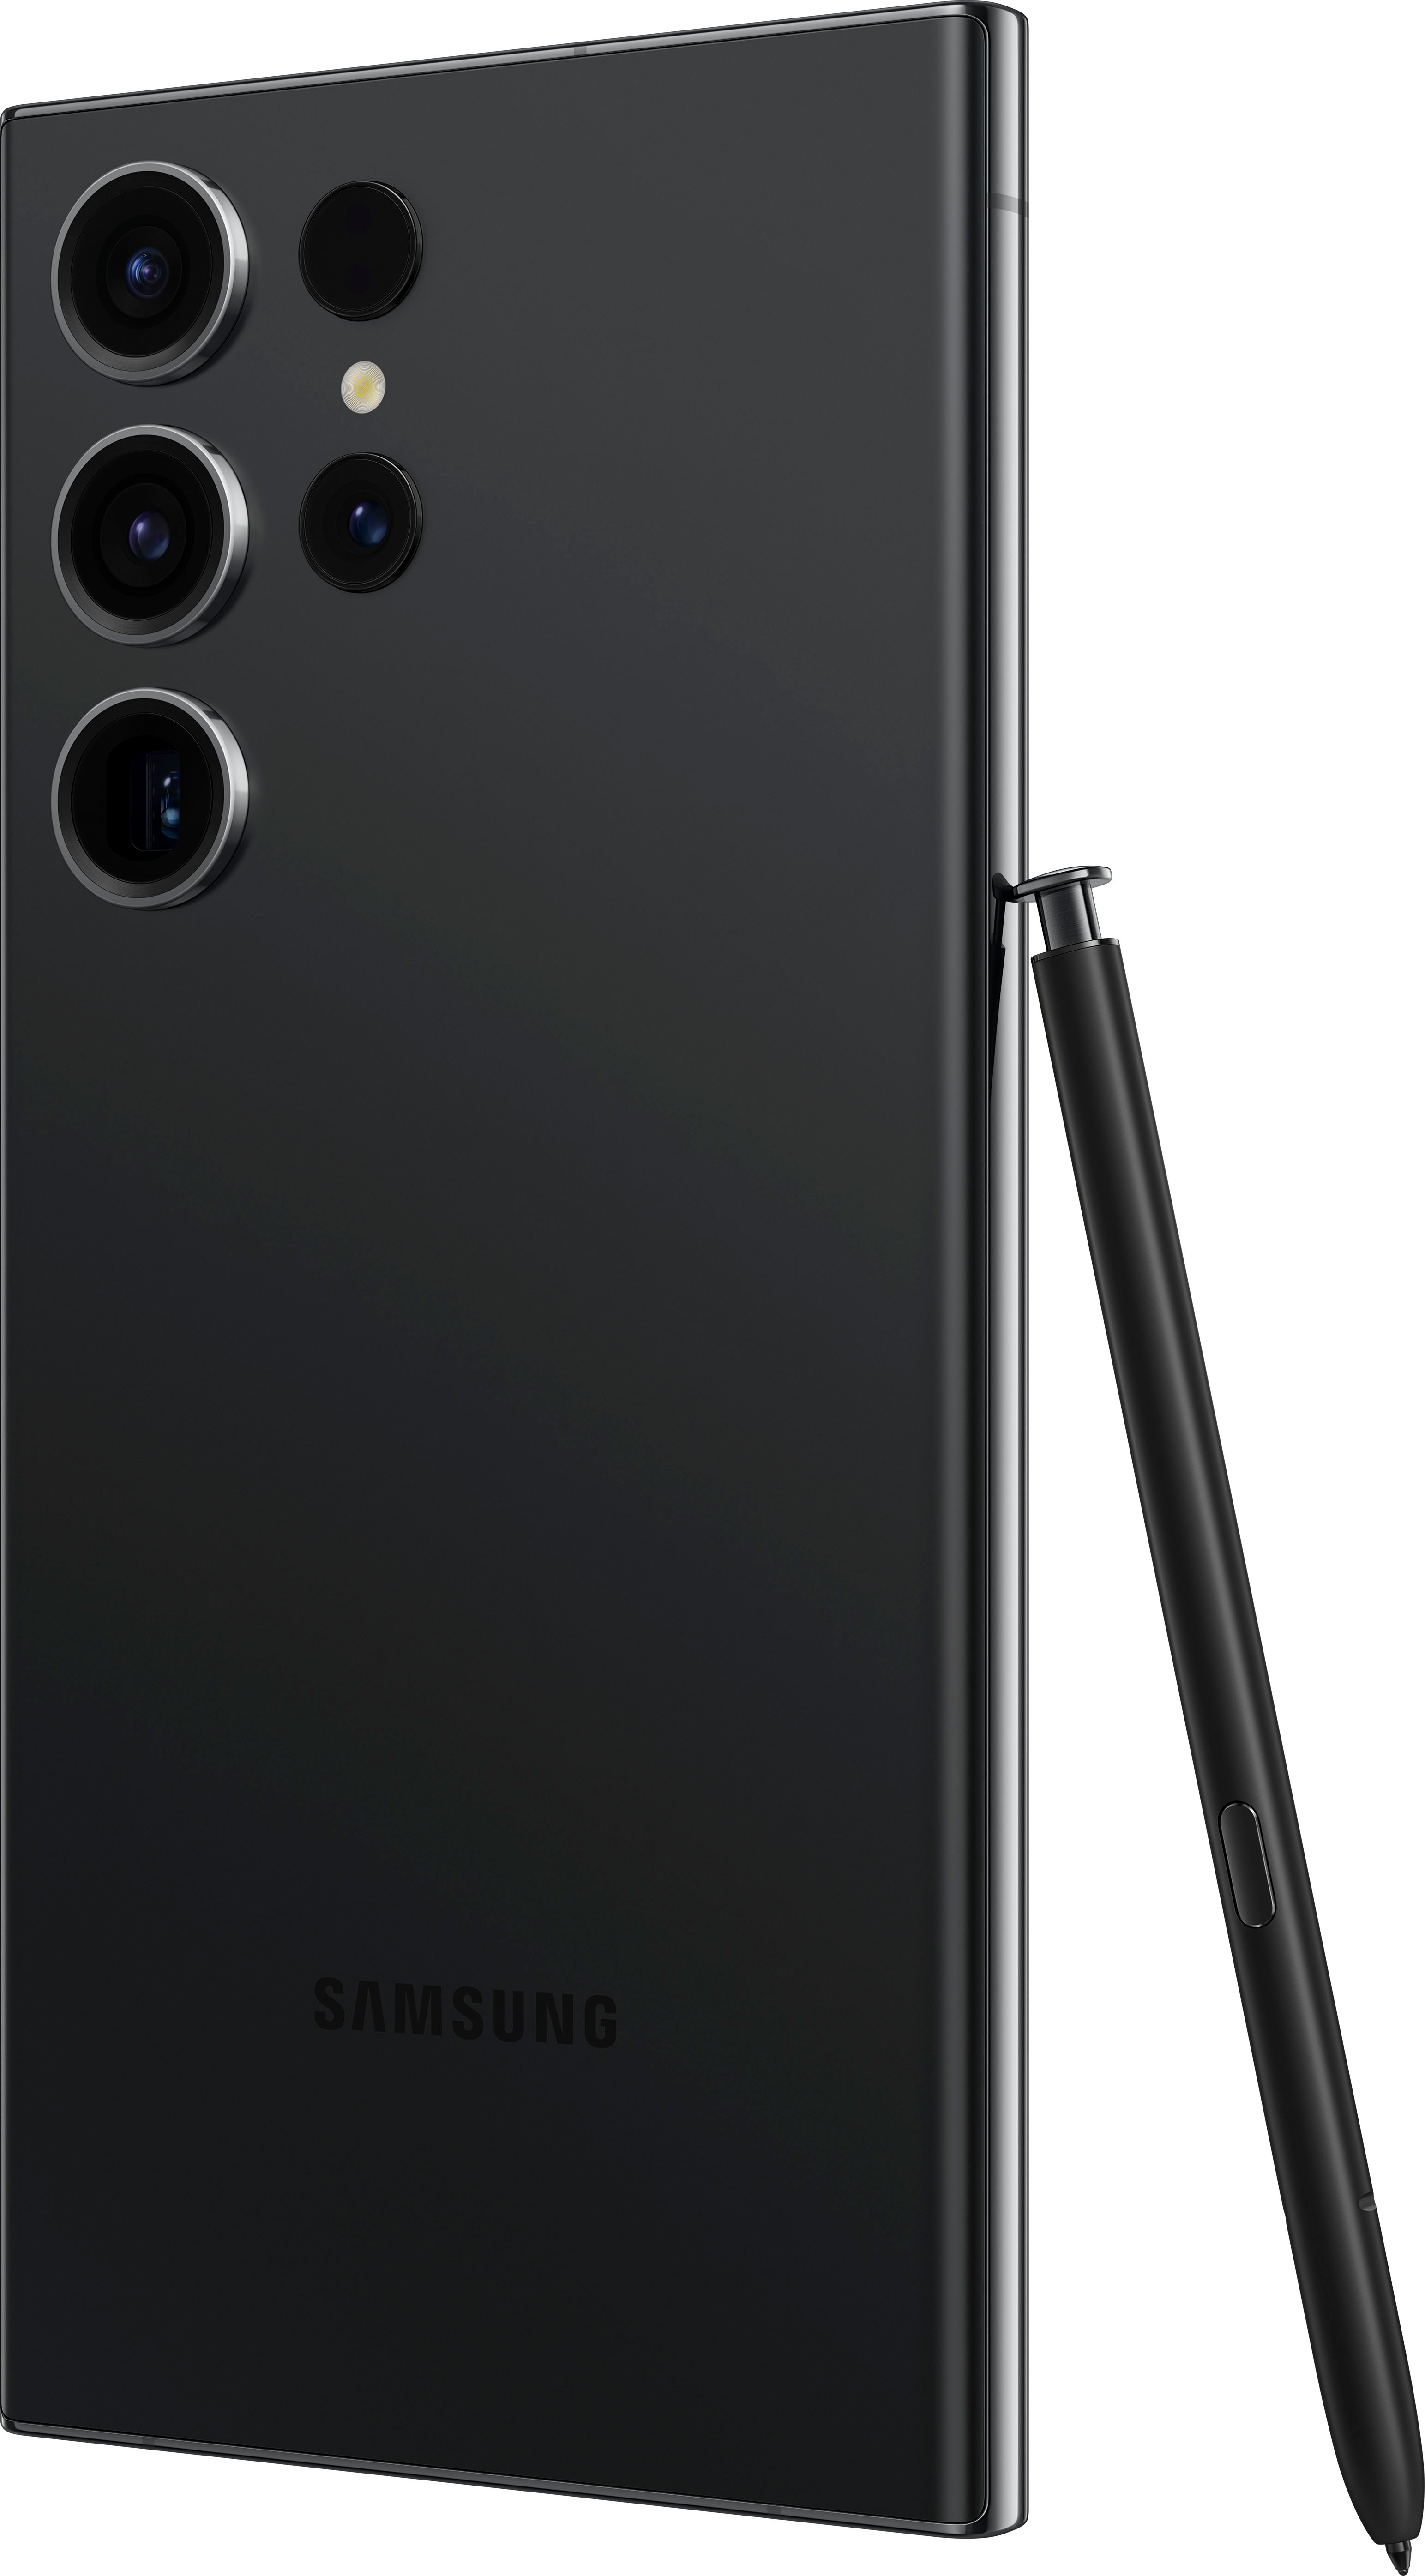 Le Samsung Galaxy S23 Ultra profite d'une offre folle pour le Black Friday  (offre limitée)